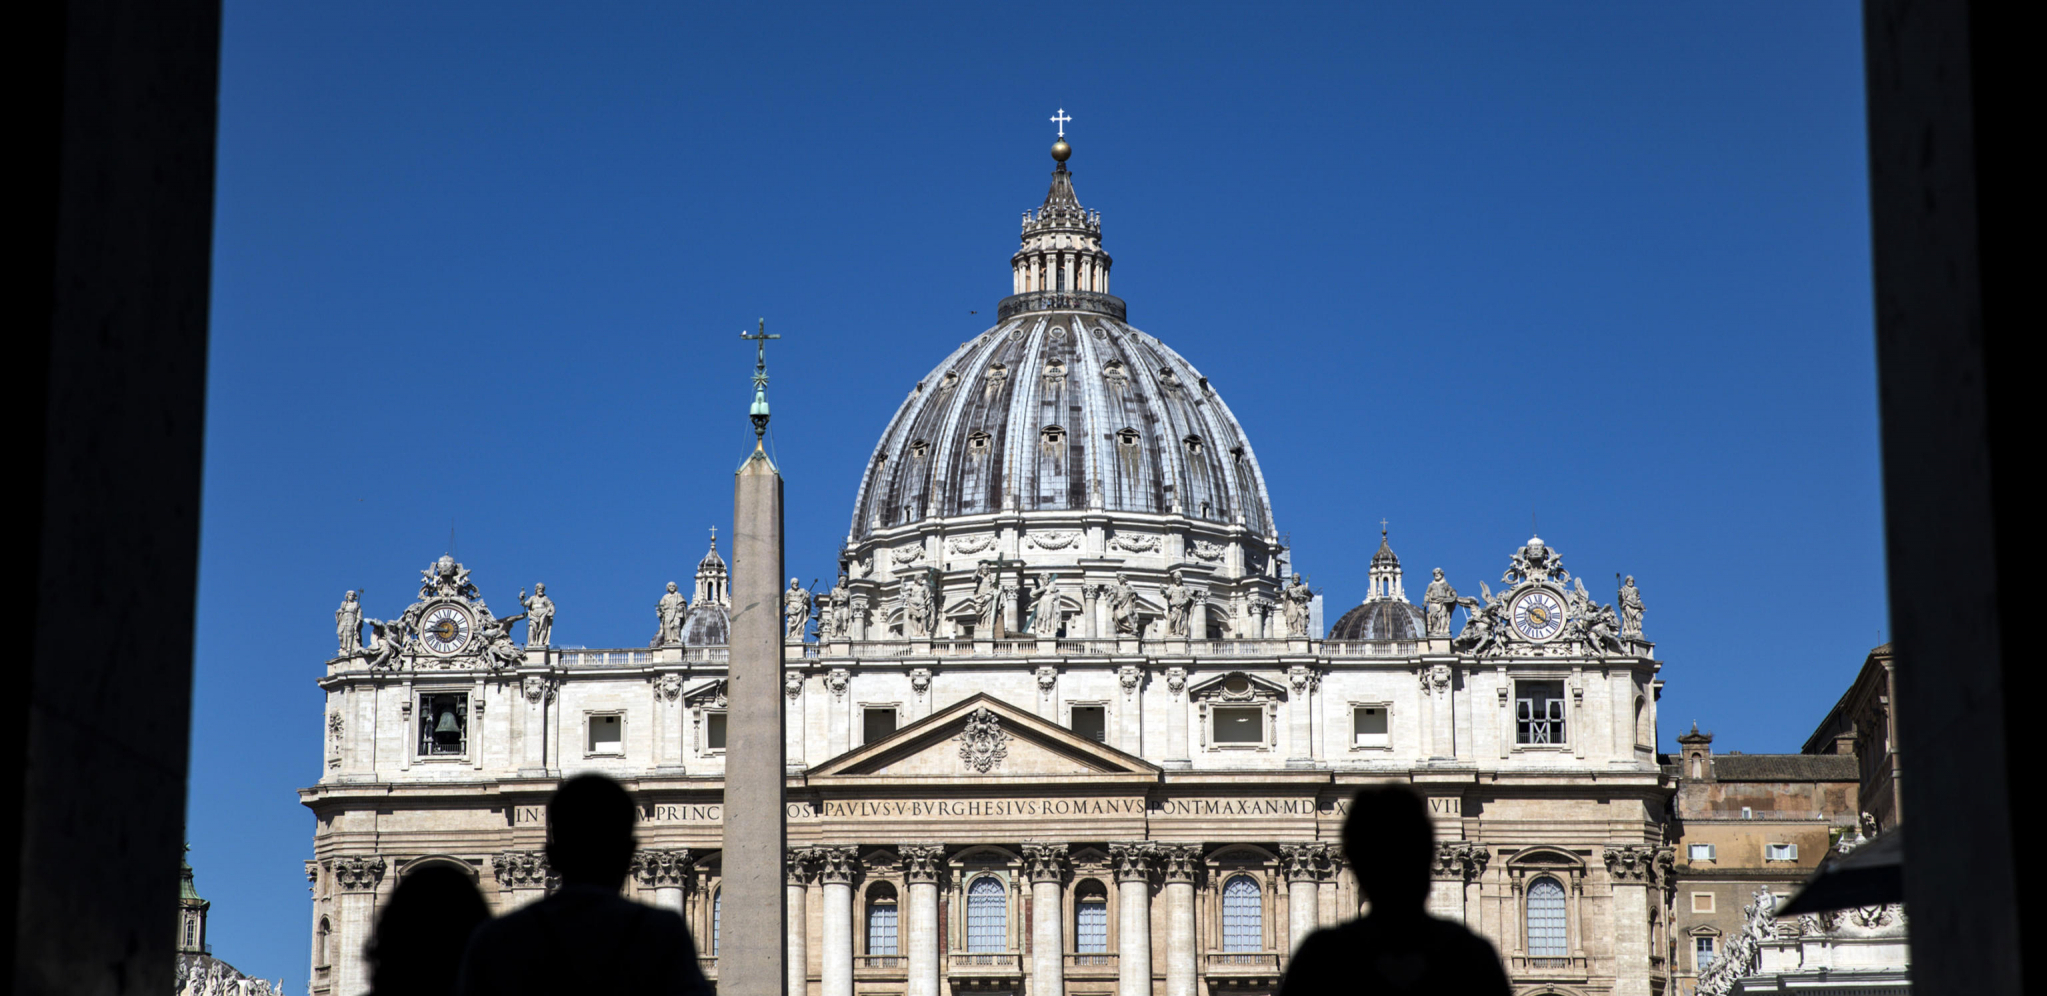 RAZVRAT U BRITANSKOJ KATEDRALI?! Vatikan istražuje navode o se*s-žurki u Njukaslu